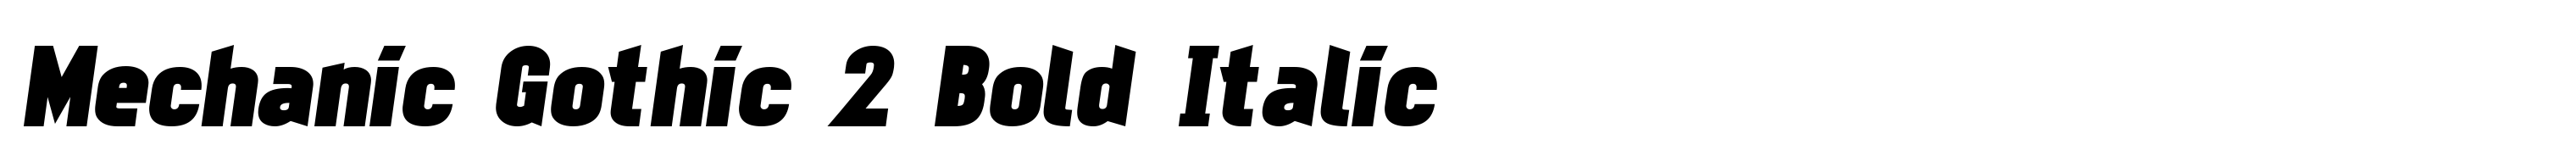 Mechanic Gothic 2 Bold Italic